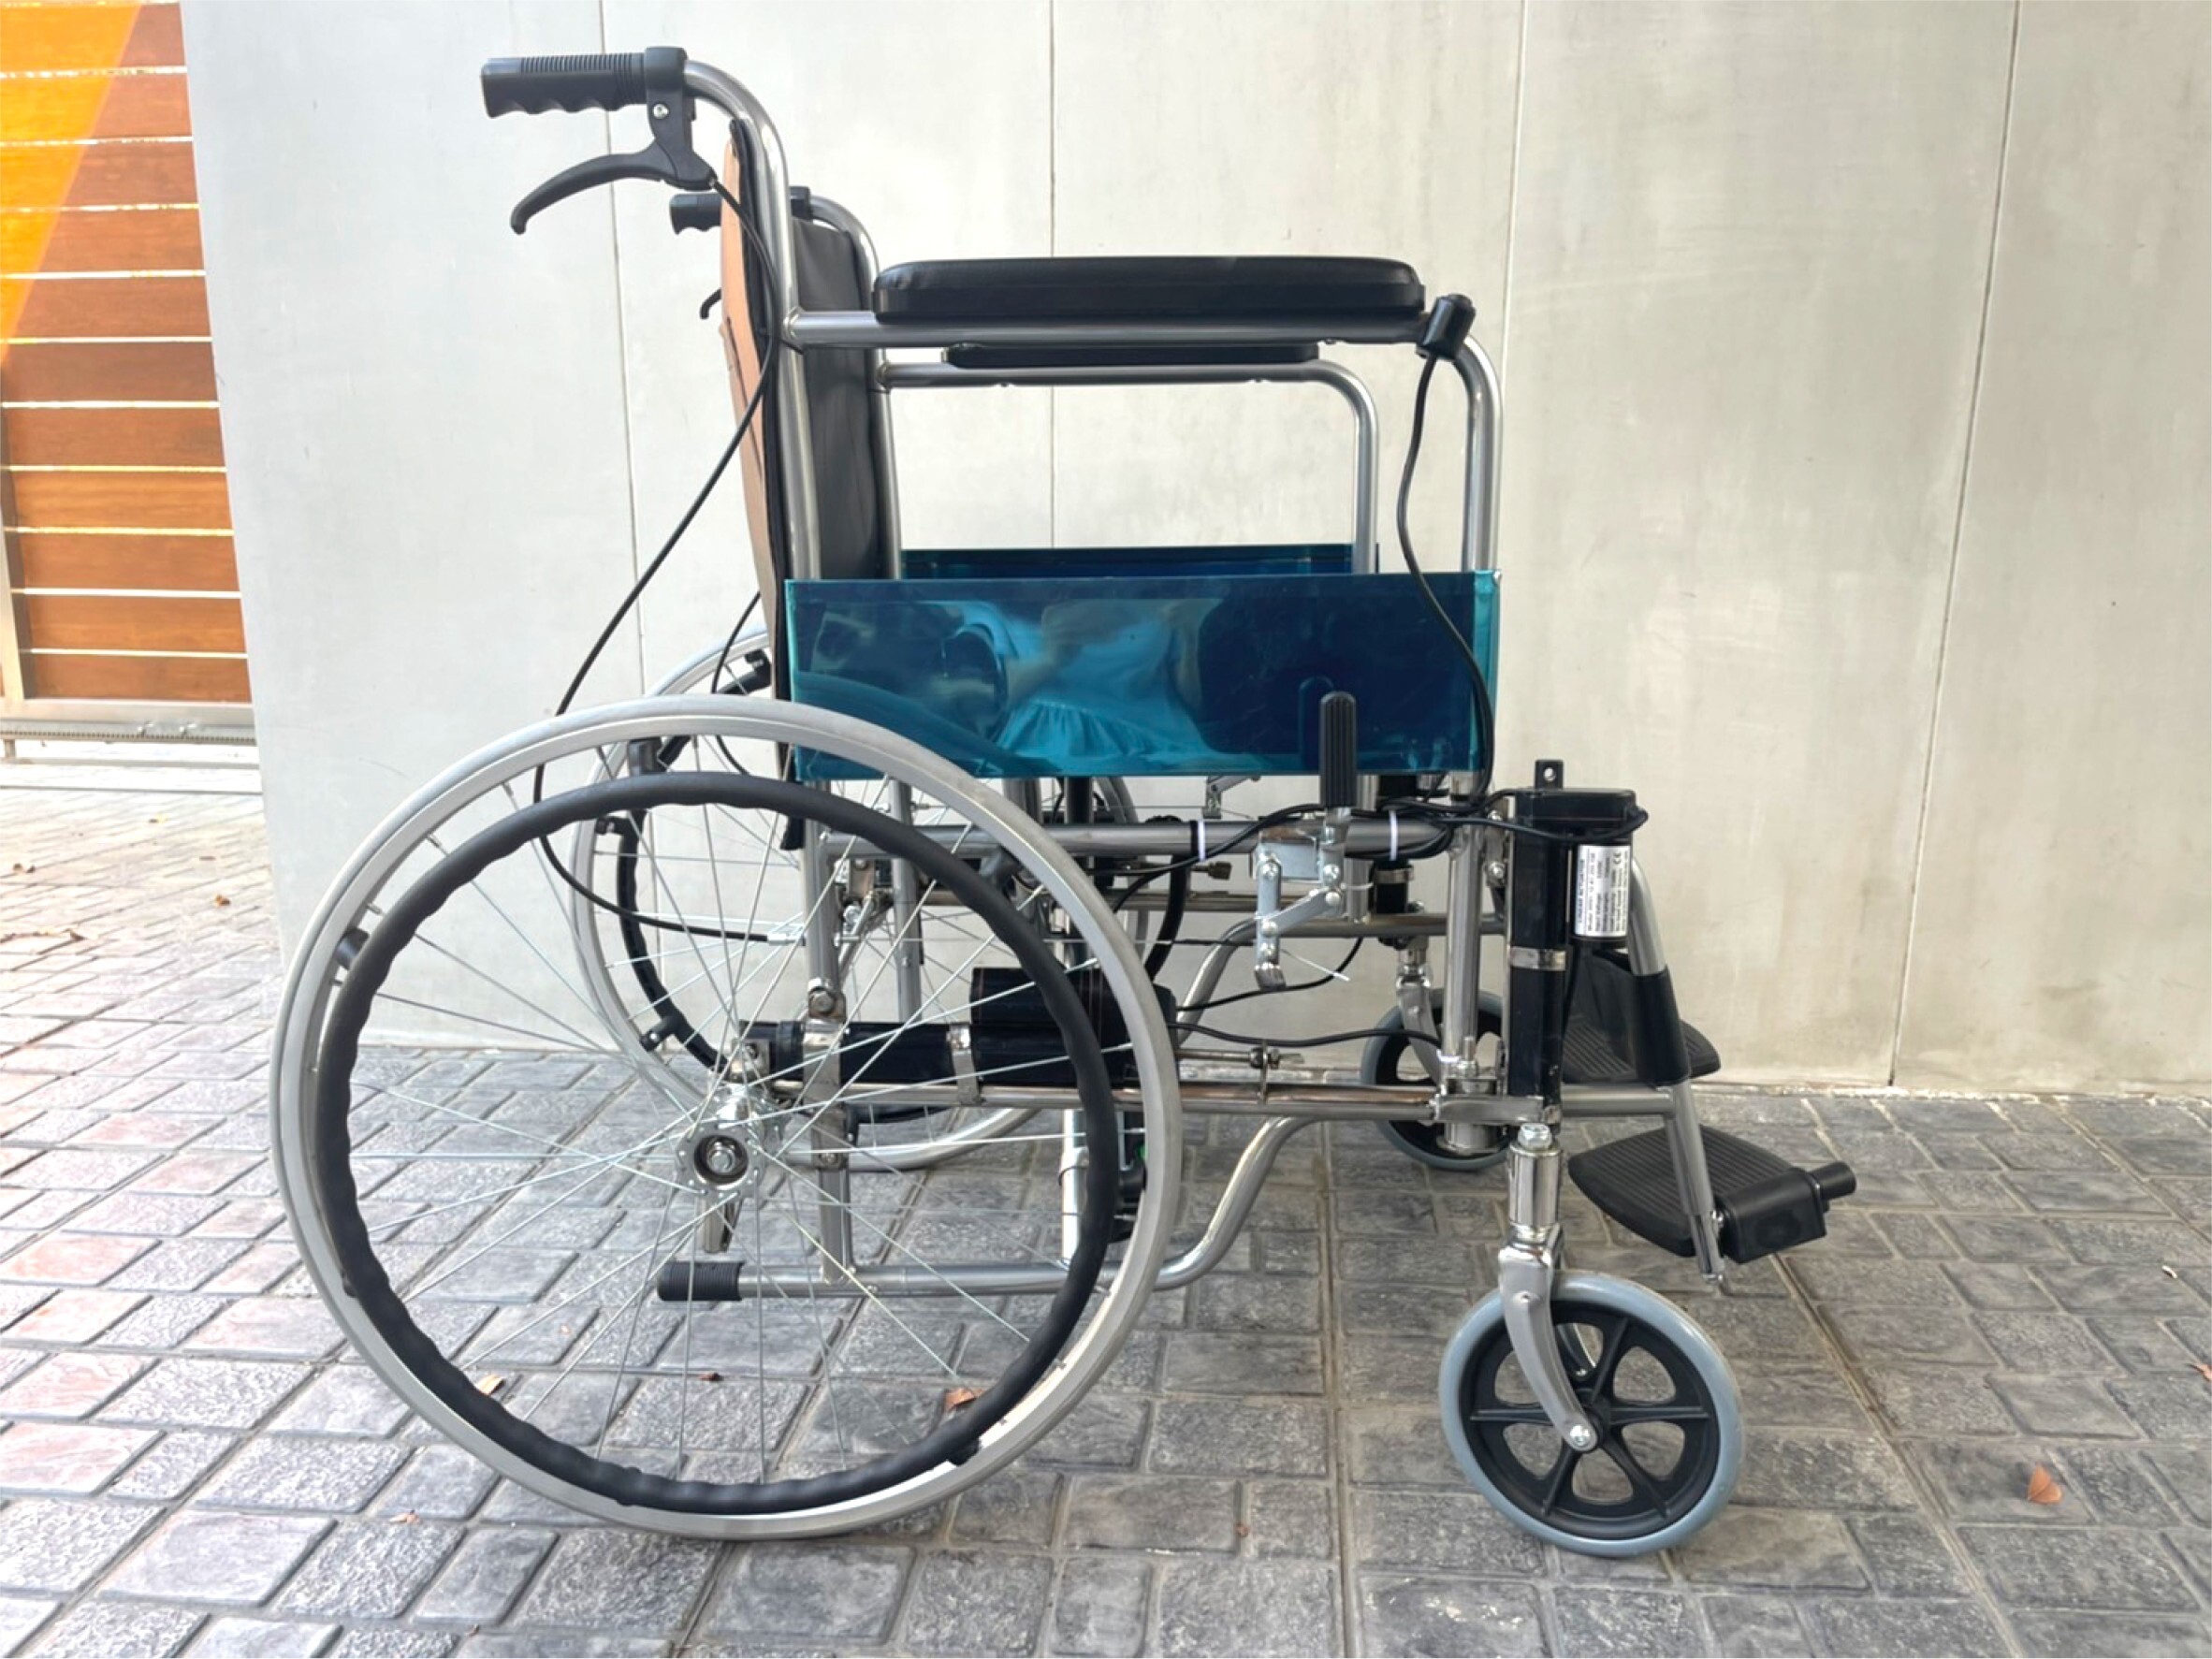 วช. หนุน นักประดิษฐ์รุ่นเยาว์ ประดิษฐ์ "อุปกรณ์เสริมเก้าอี้รถเข็น" ช่วยผู้สูงวัย คว้ารางวัลเหรียญทองเกียรติยศ เวทีเจนีวา